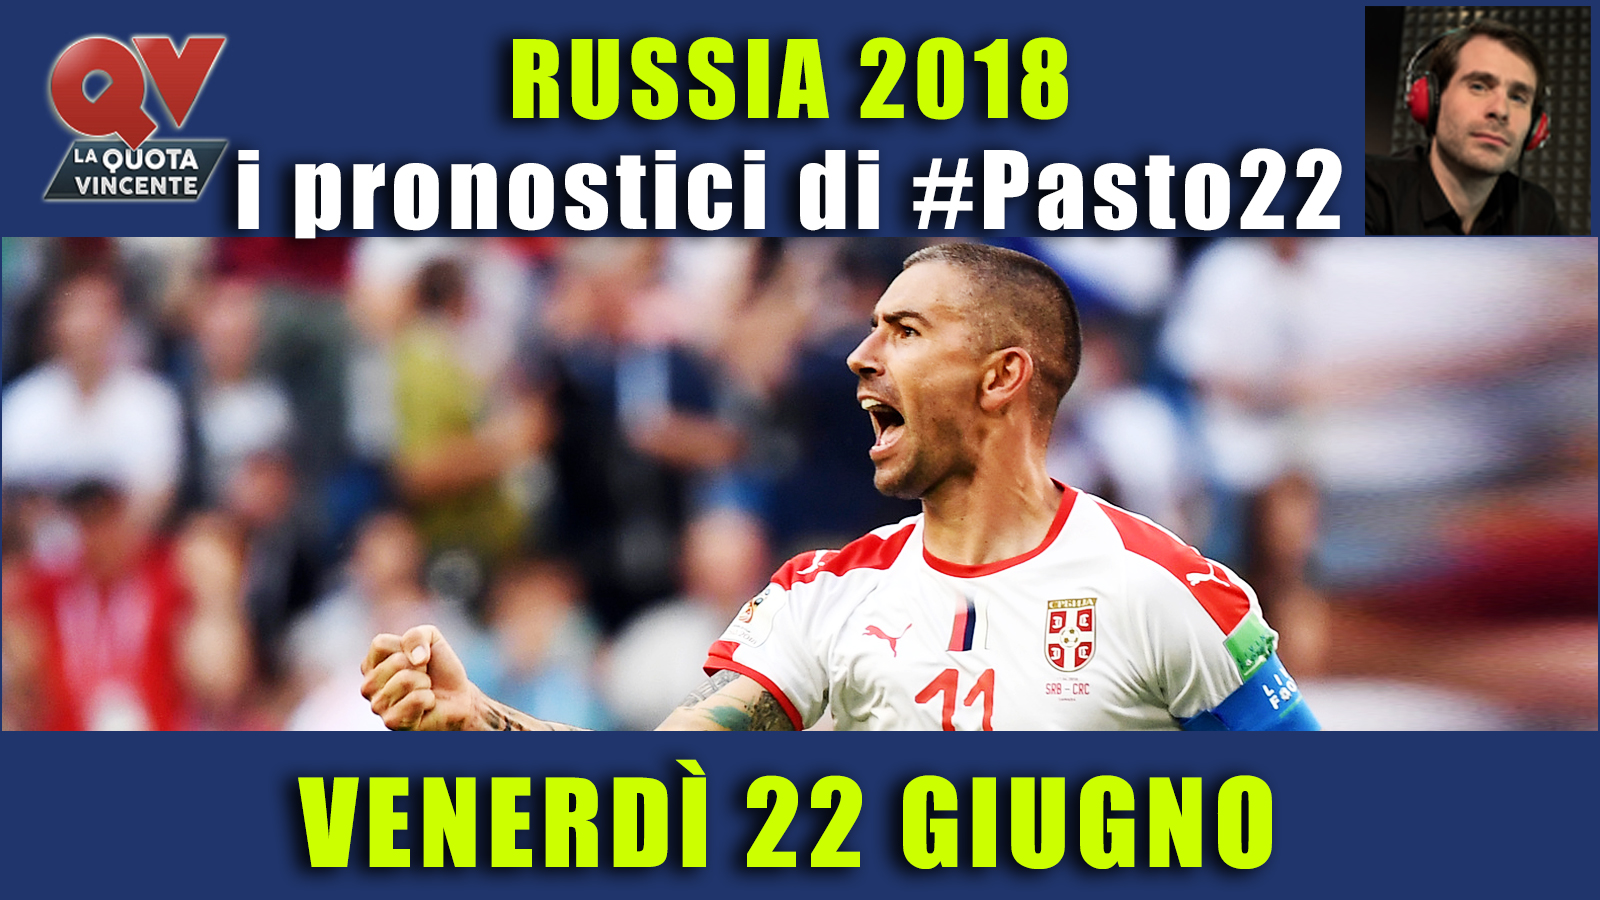 Pronostici Mondiali 22 giugno: le dritte di #Pasto22 a Russia 2018